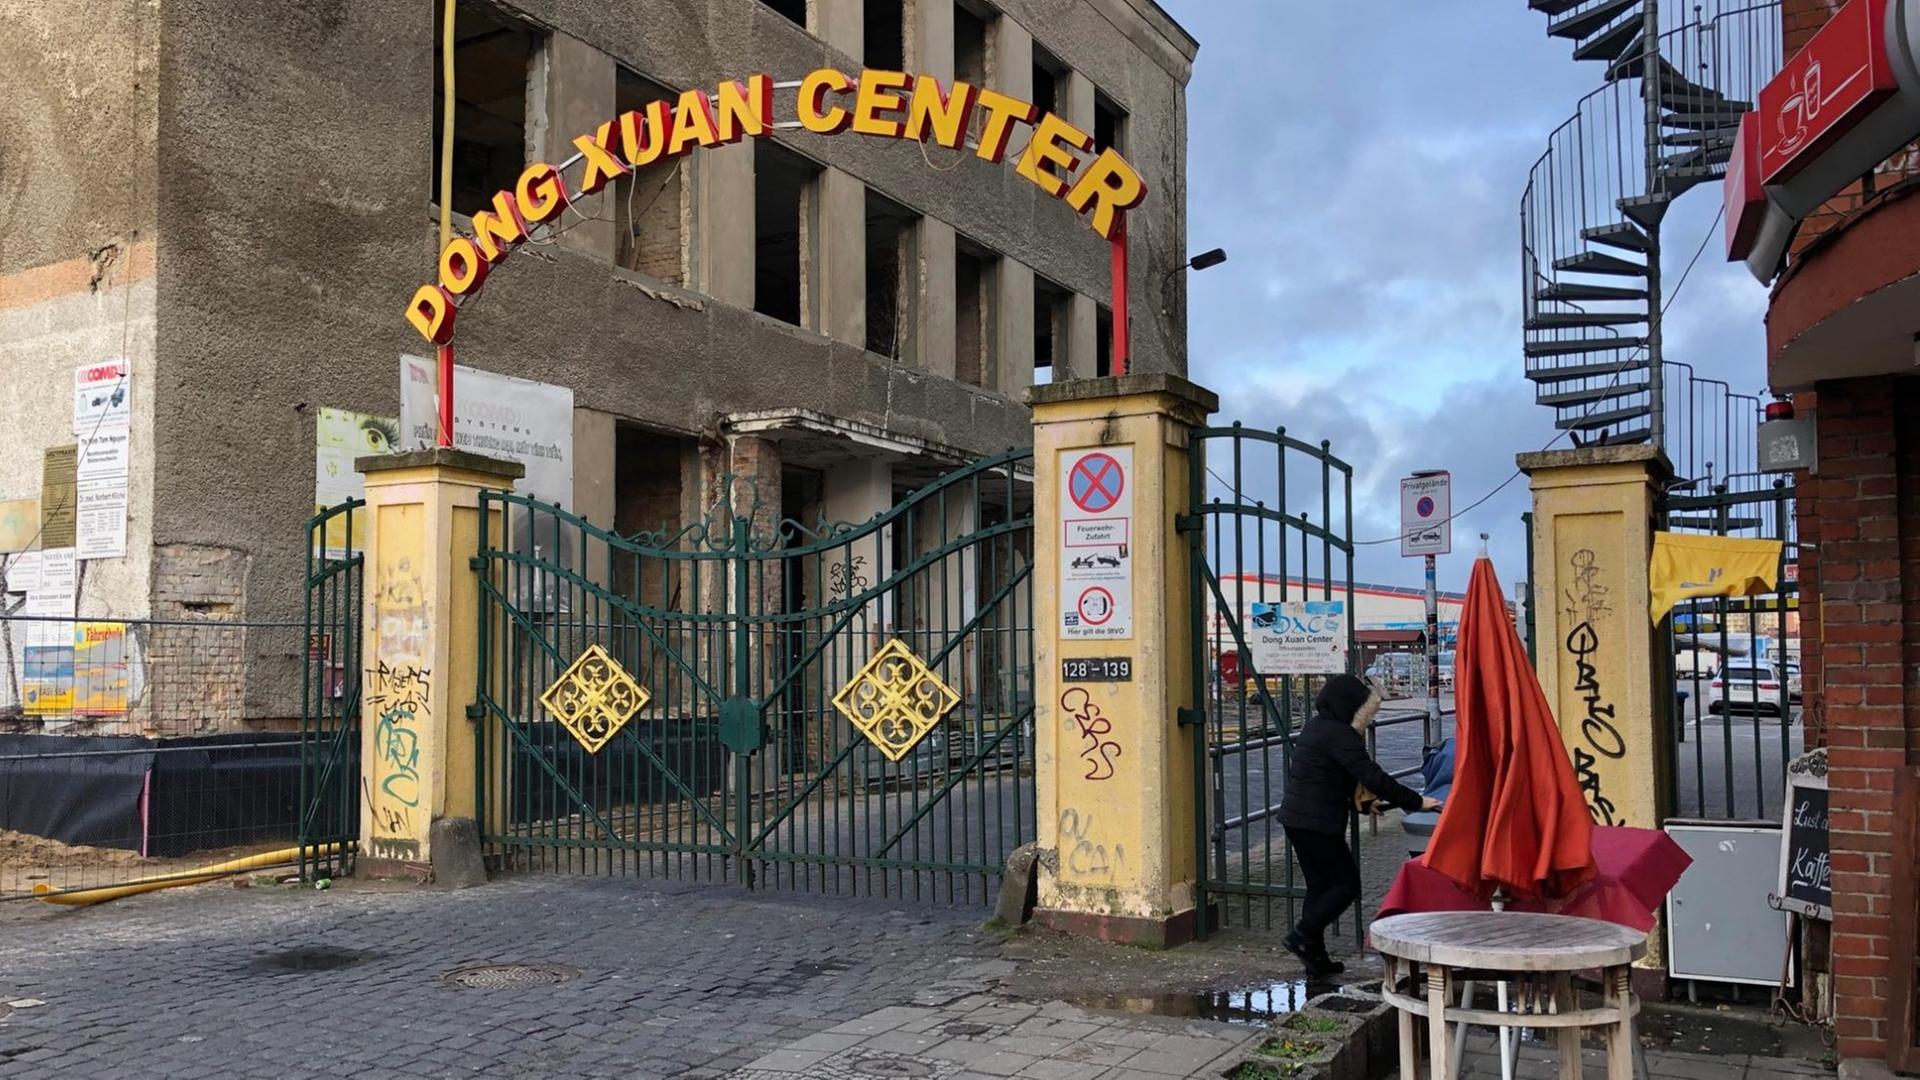 Das Foto zeigt das schmiedeeiserne Eingangstour mit goldenem Schriftzug des vietnamesischen Handelscenters Dong Xuan in Berlin-Lichtenberg.